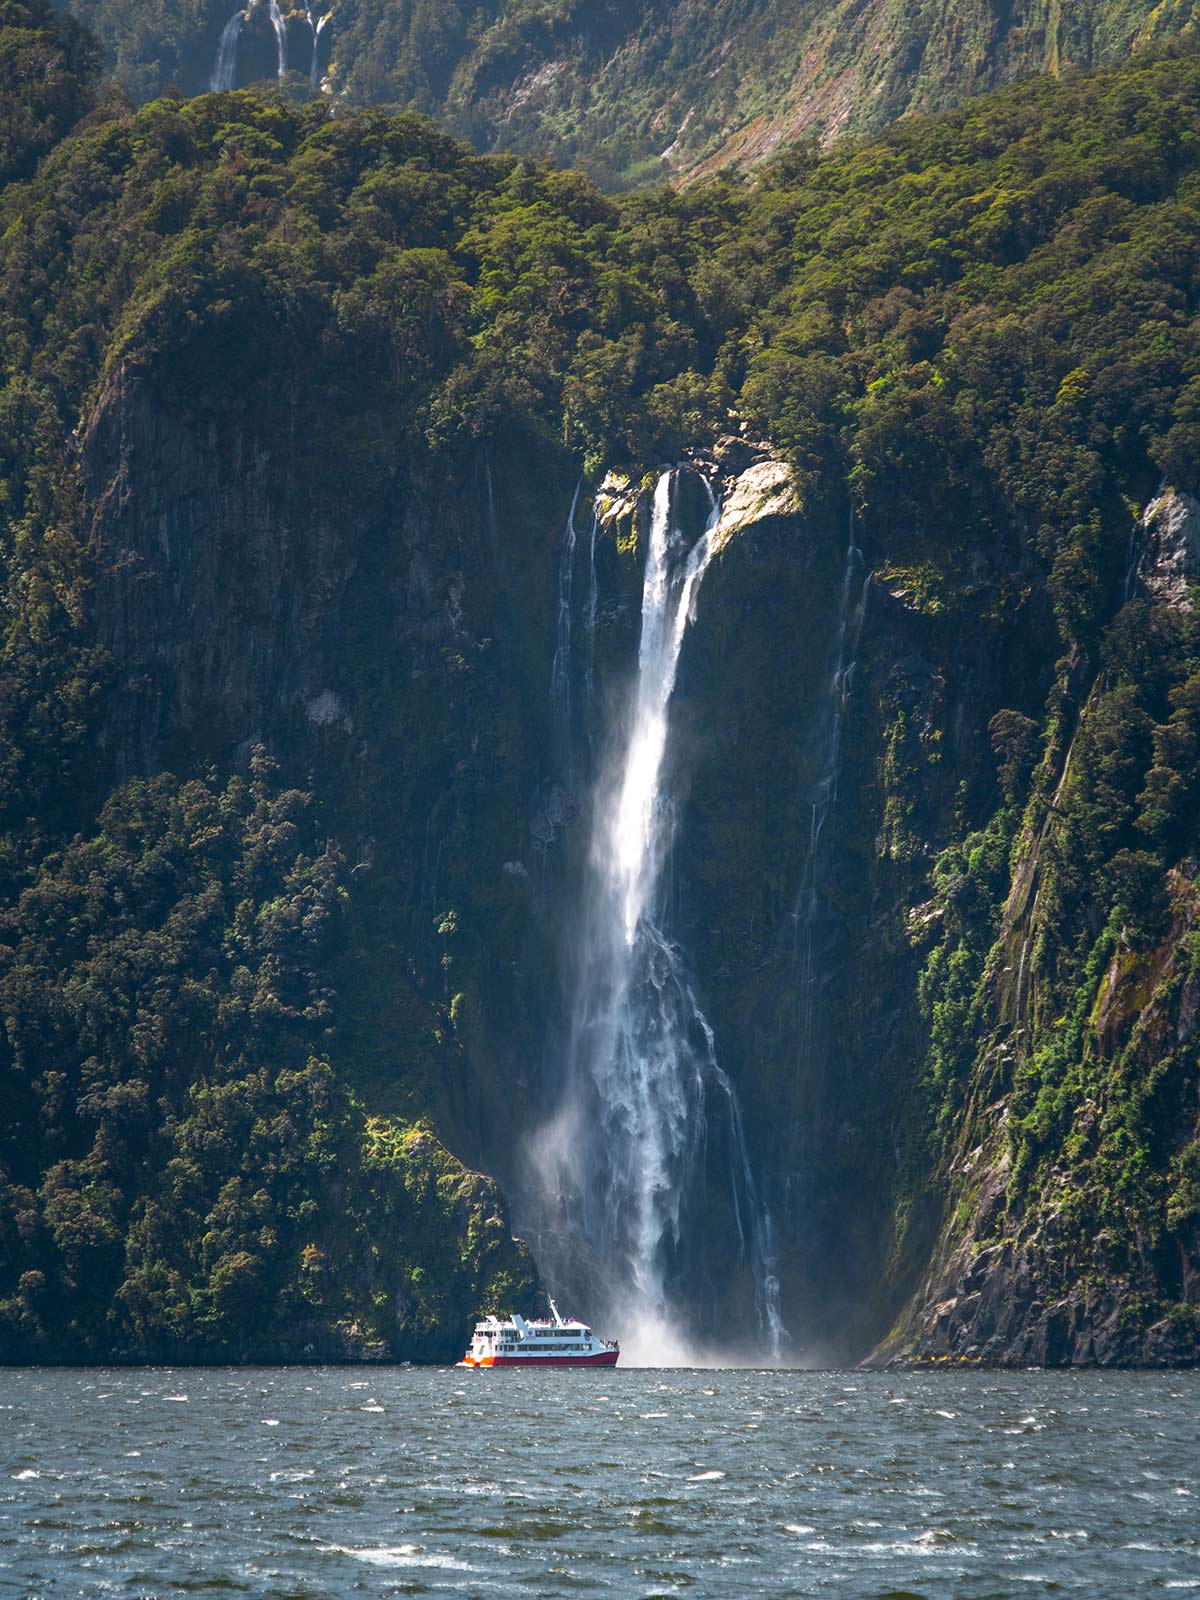 Bateau, Chutes de Stirling, Fjord de Milford Sound, île du Sud, Nouvelle-Zélande / Cruise Boat, Stirling Waterfalls, Milford Sound Fiord, South Island, New-Zealand, NZ, Aotearoa